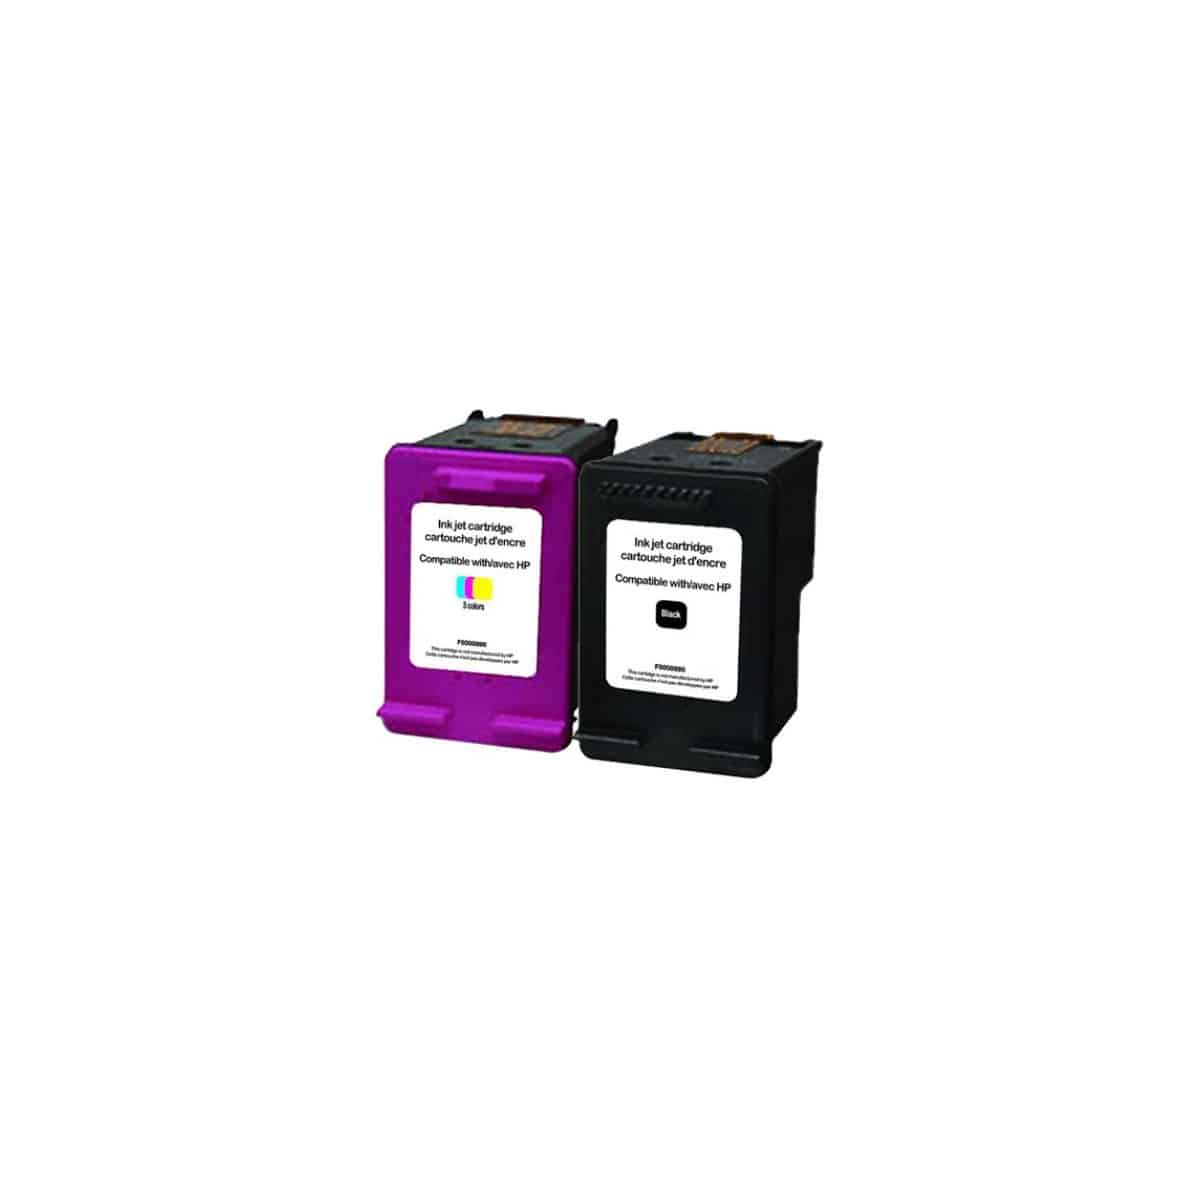 ✓ Pack compatible avec HP 303XL (T6N04AE/T6N03AE) noir et couleur